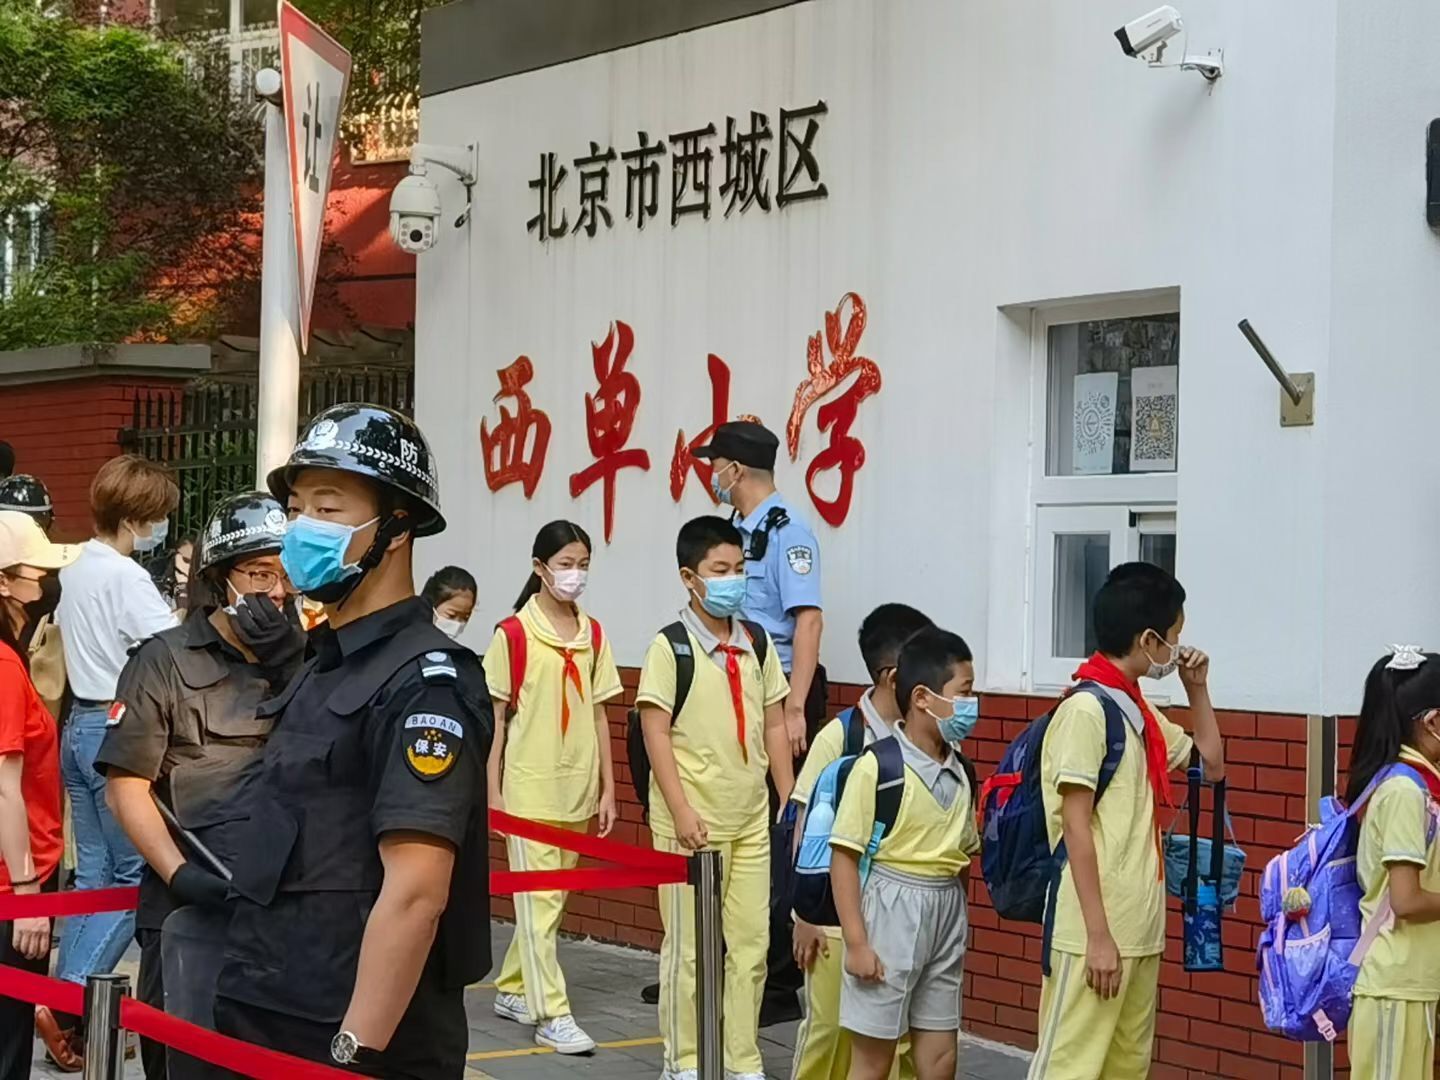 9月1日一早,民警来到西单小学门口执勤,确保学生们顺利安全进入学校.